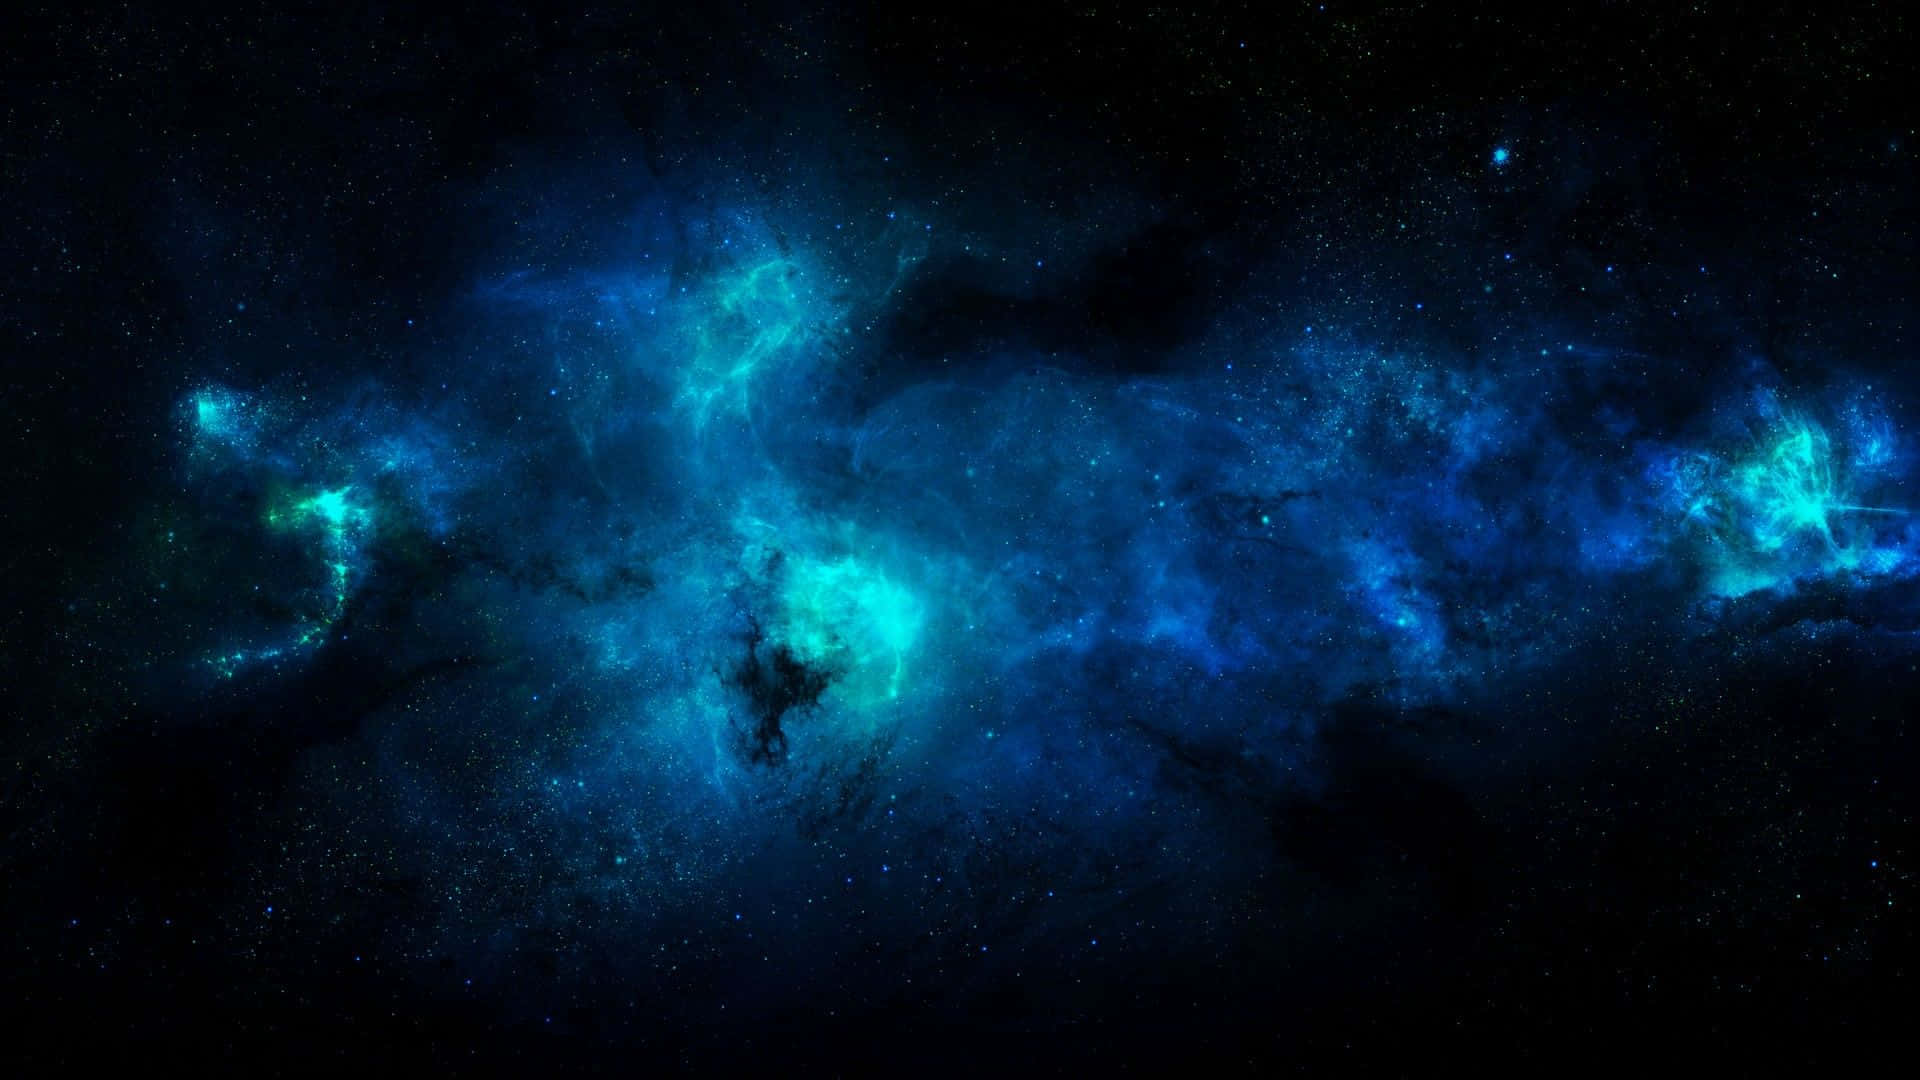 Unarepresentación Solitaria De La Belleza Y La Serenidad, Esta Galaxia Azul Cool Seguramente Te Transportará A Otro Universo. Fondo de pantalla